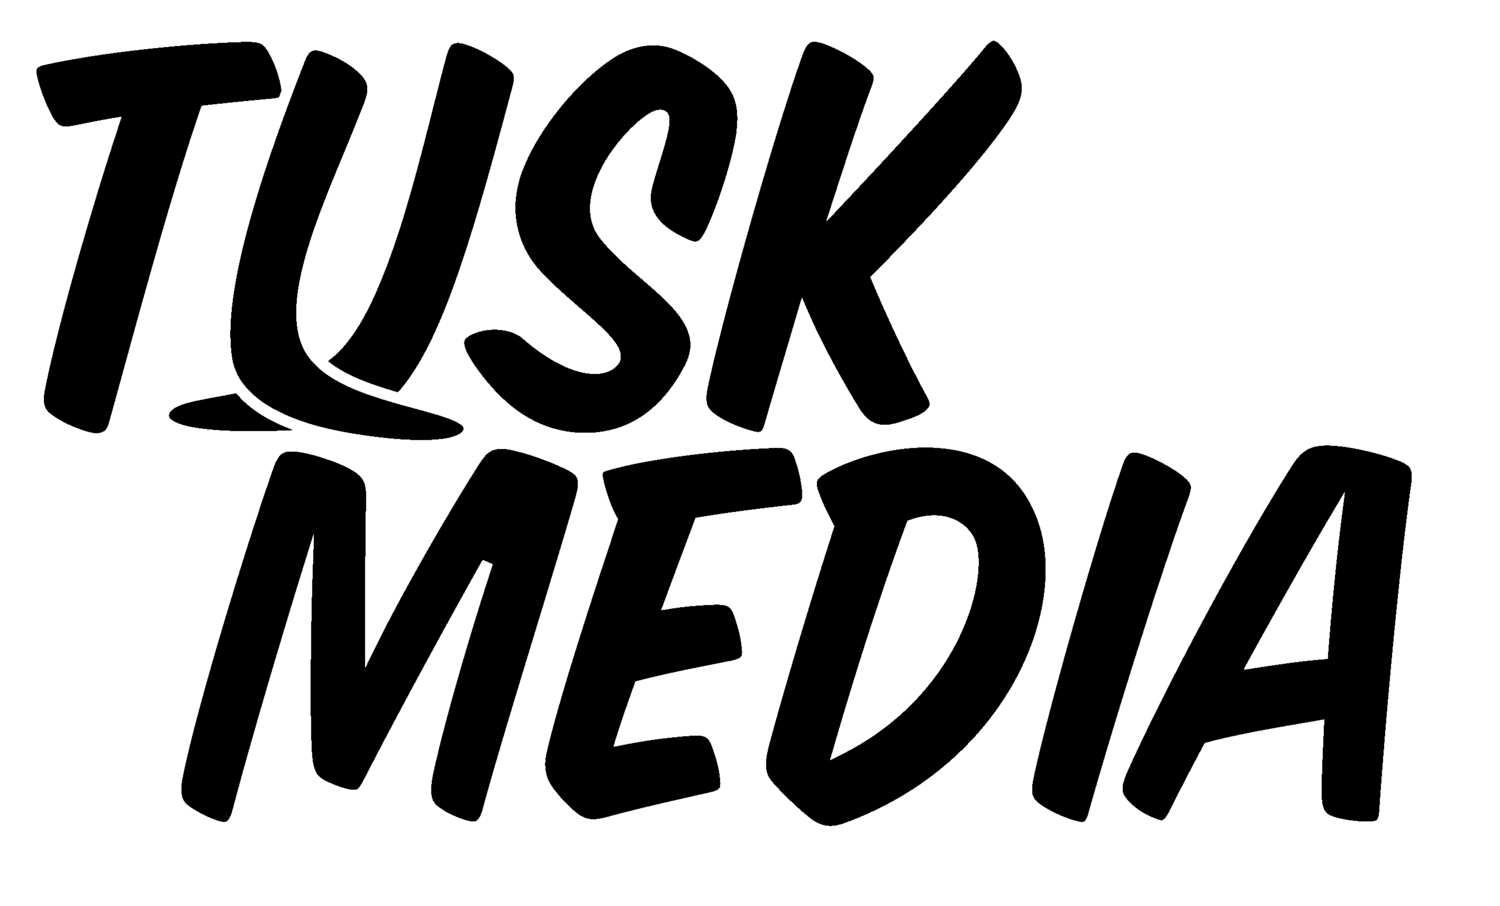 Tusk Media